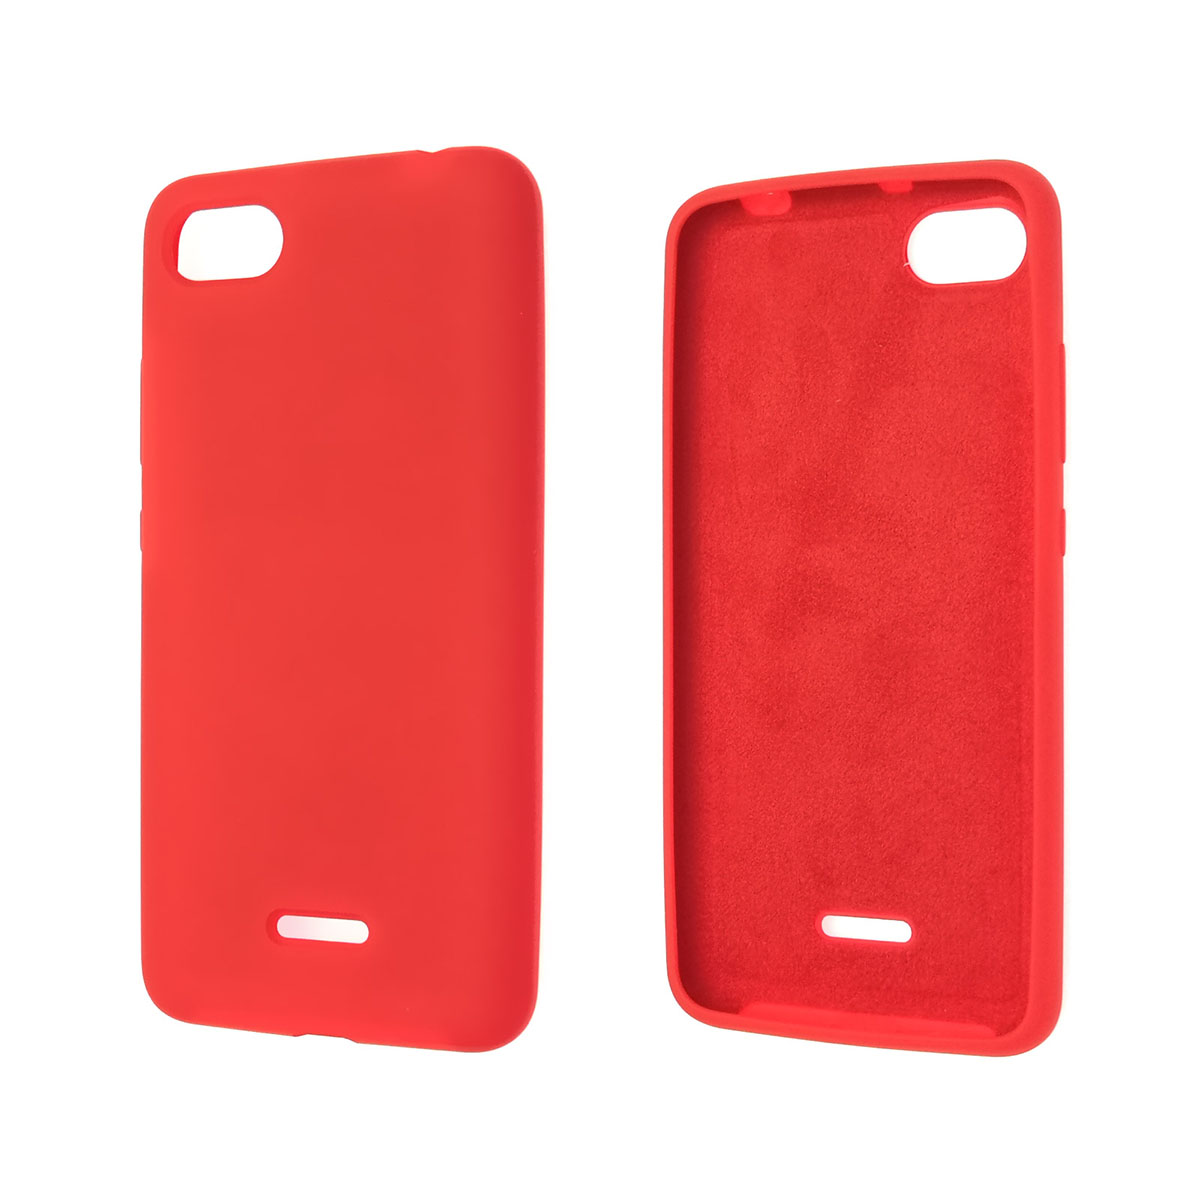 Чехол накладка Silicon Cover для XIAOMI Redmi 6A, силикон, бархат, цвет красный.